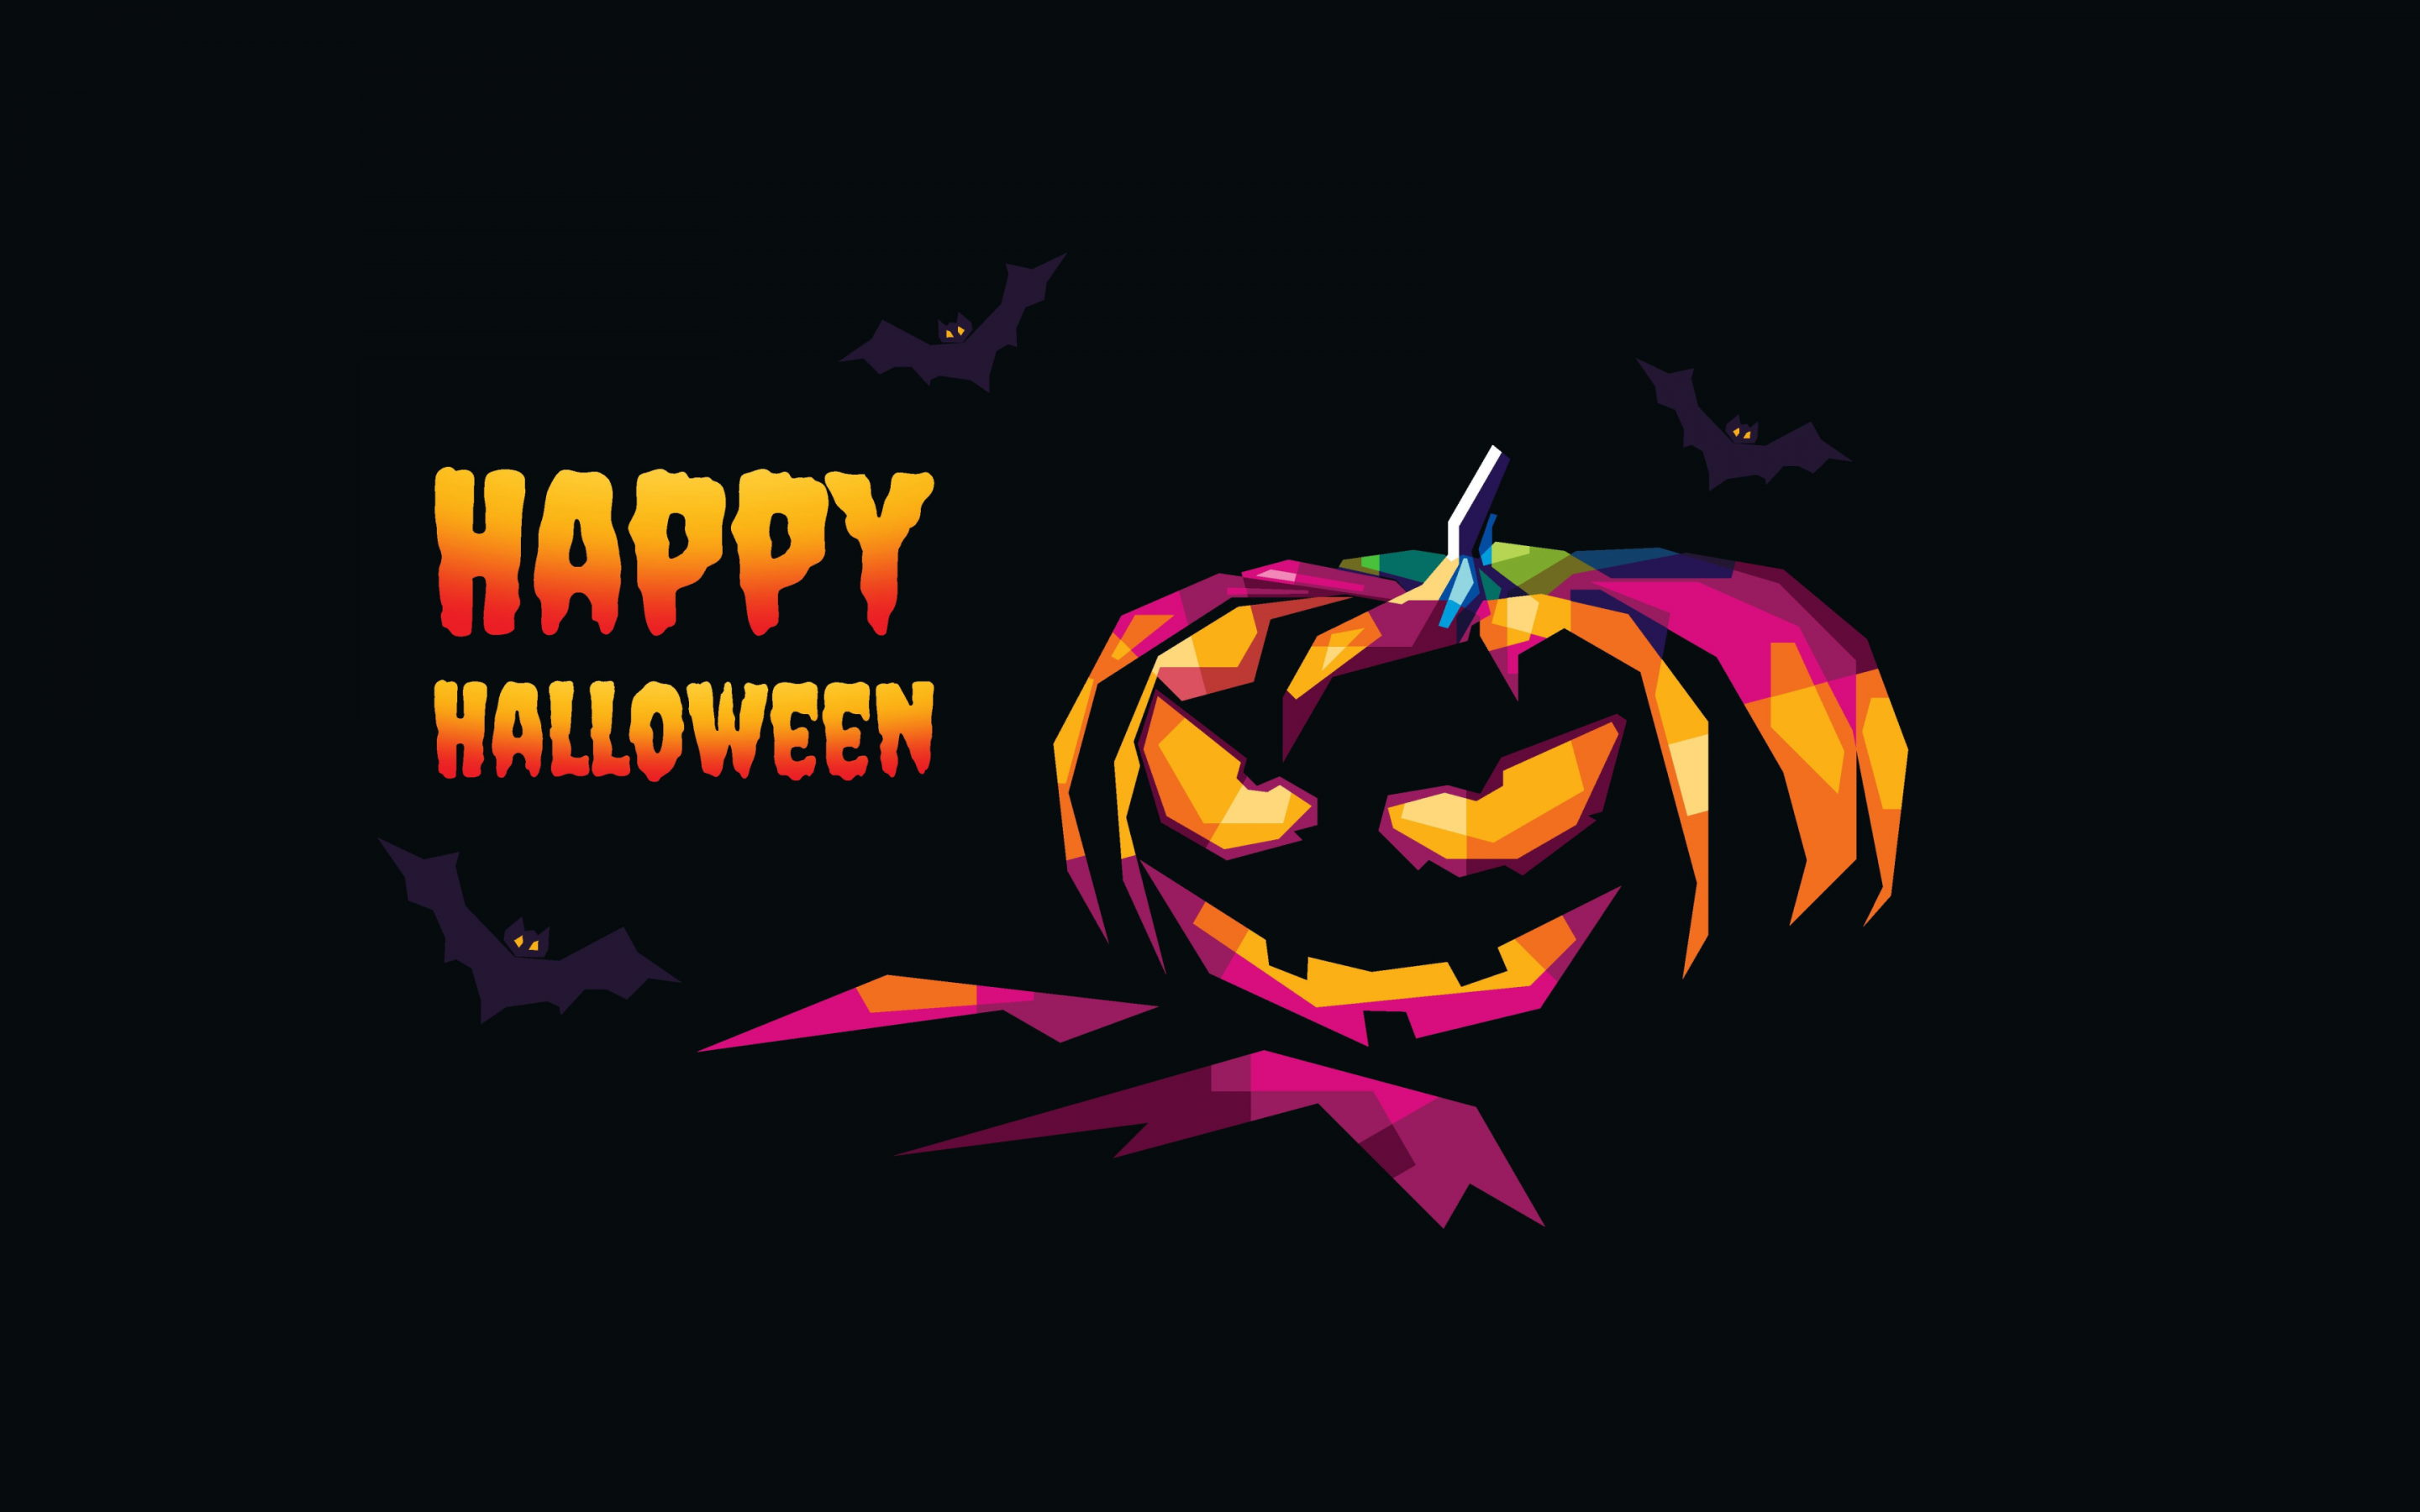 Happy Halloween iPhone HD Wallpapers  PixelsTalkNet